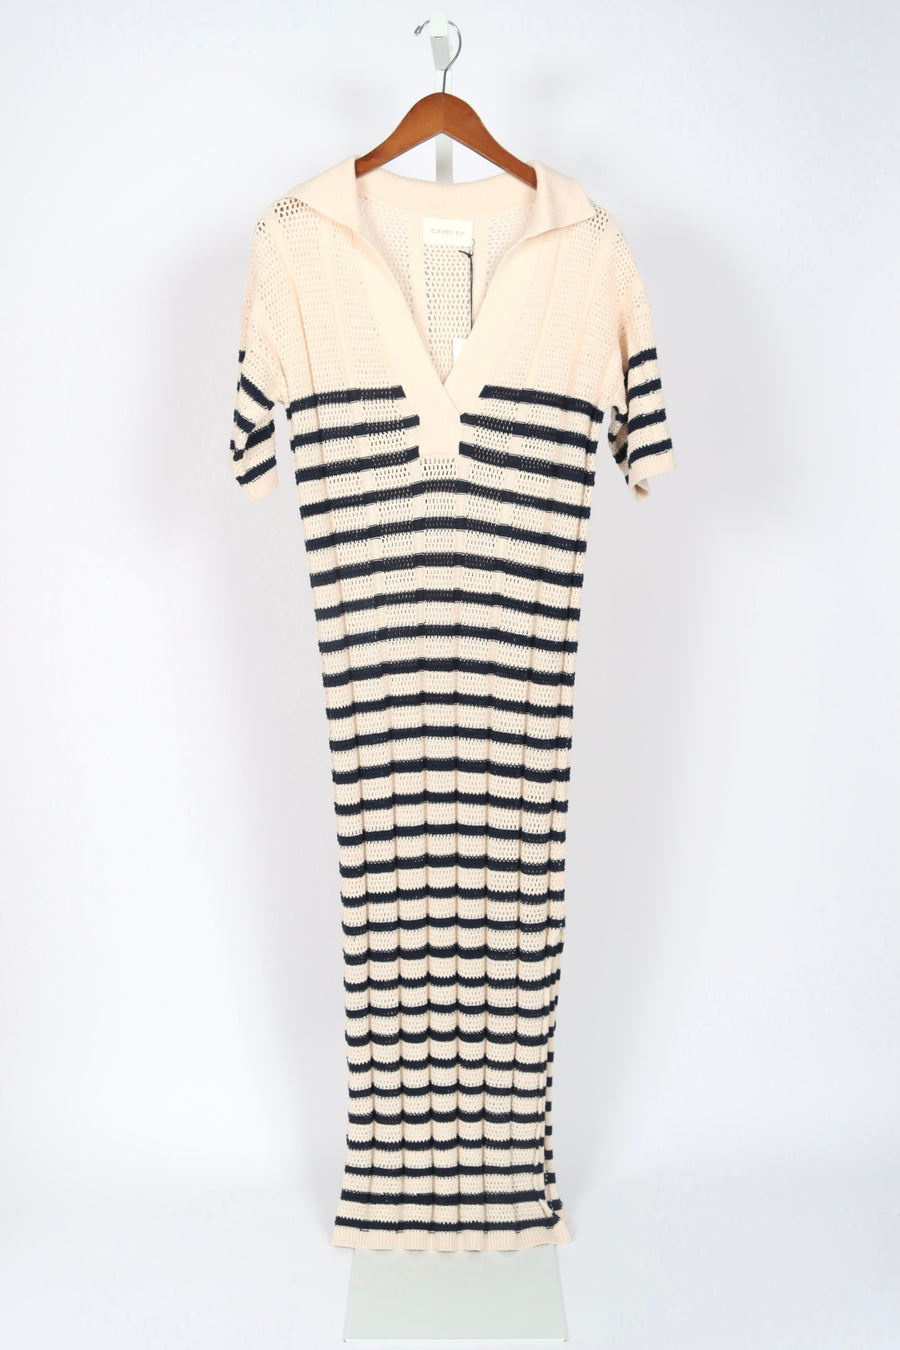 Emmie Stripe Dress - Ivory/Navy